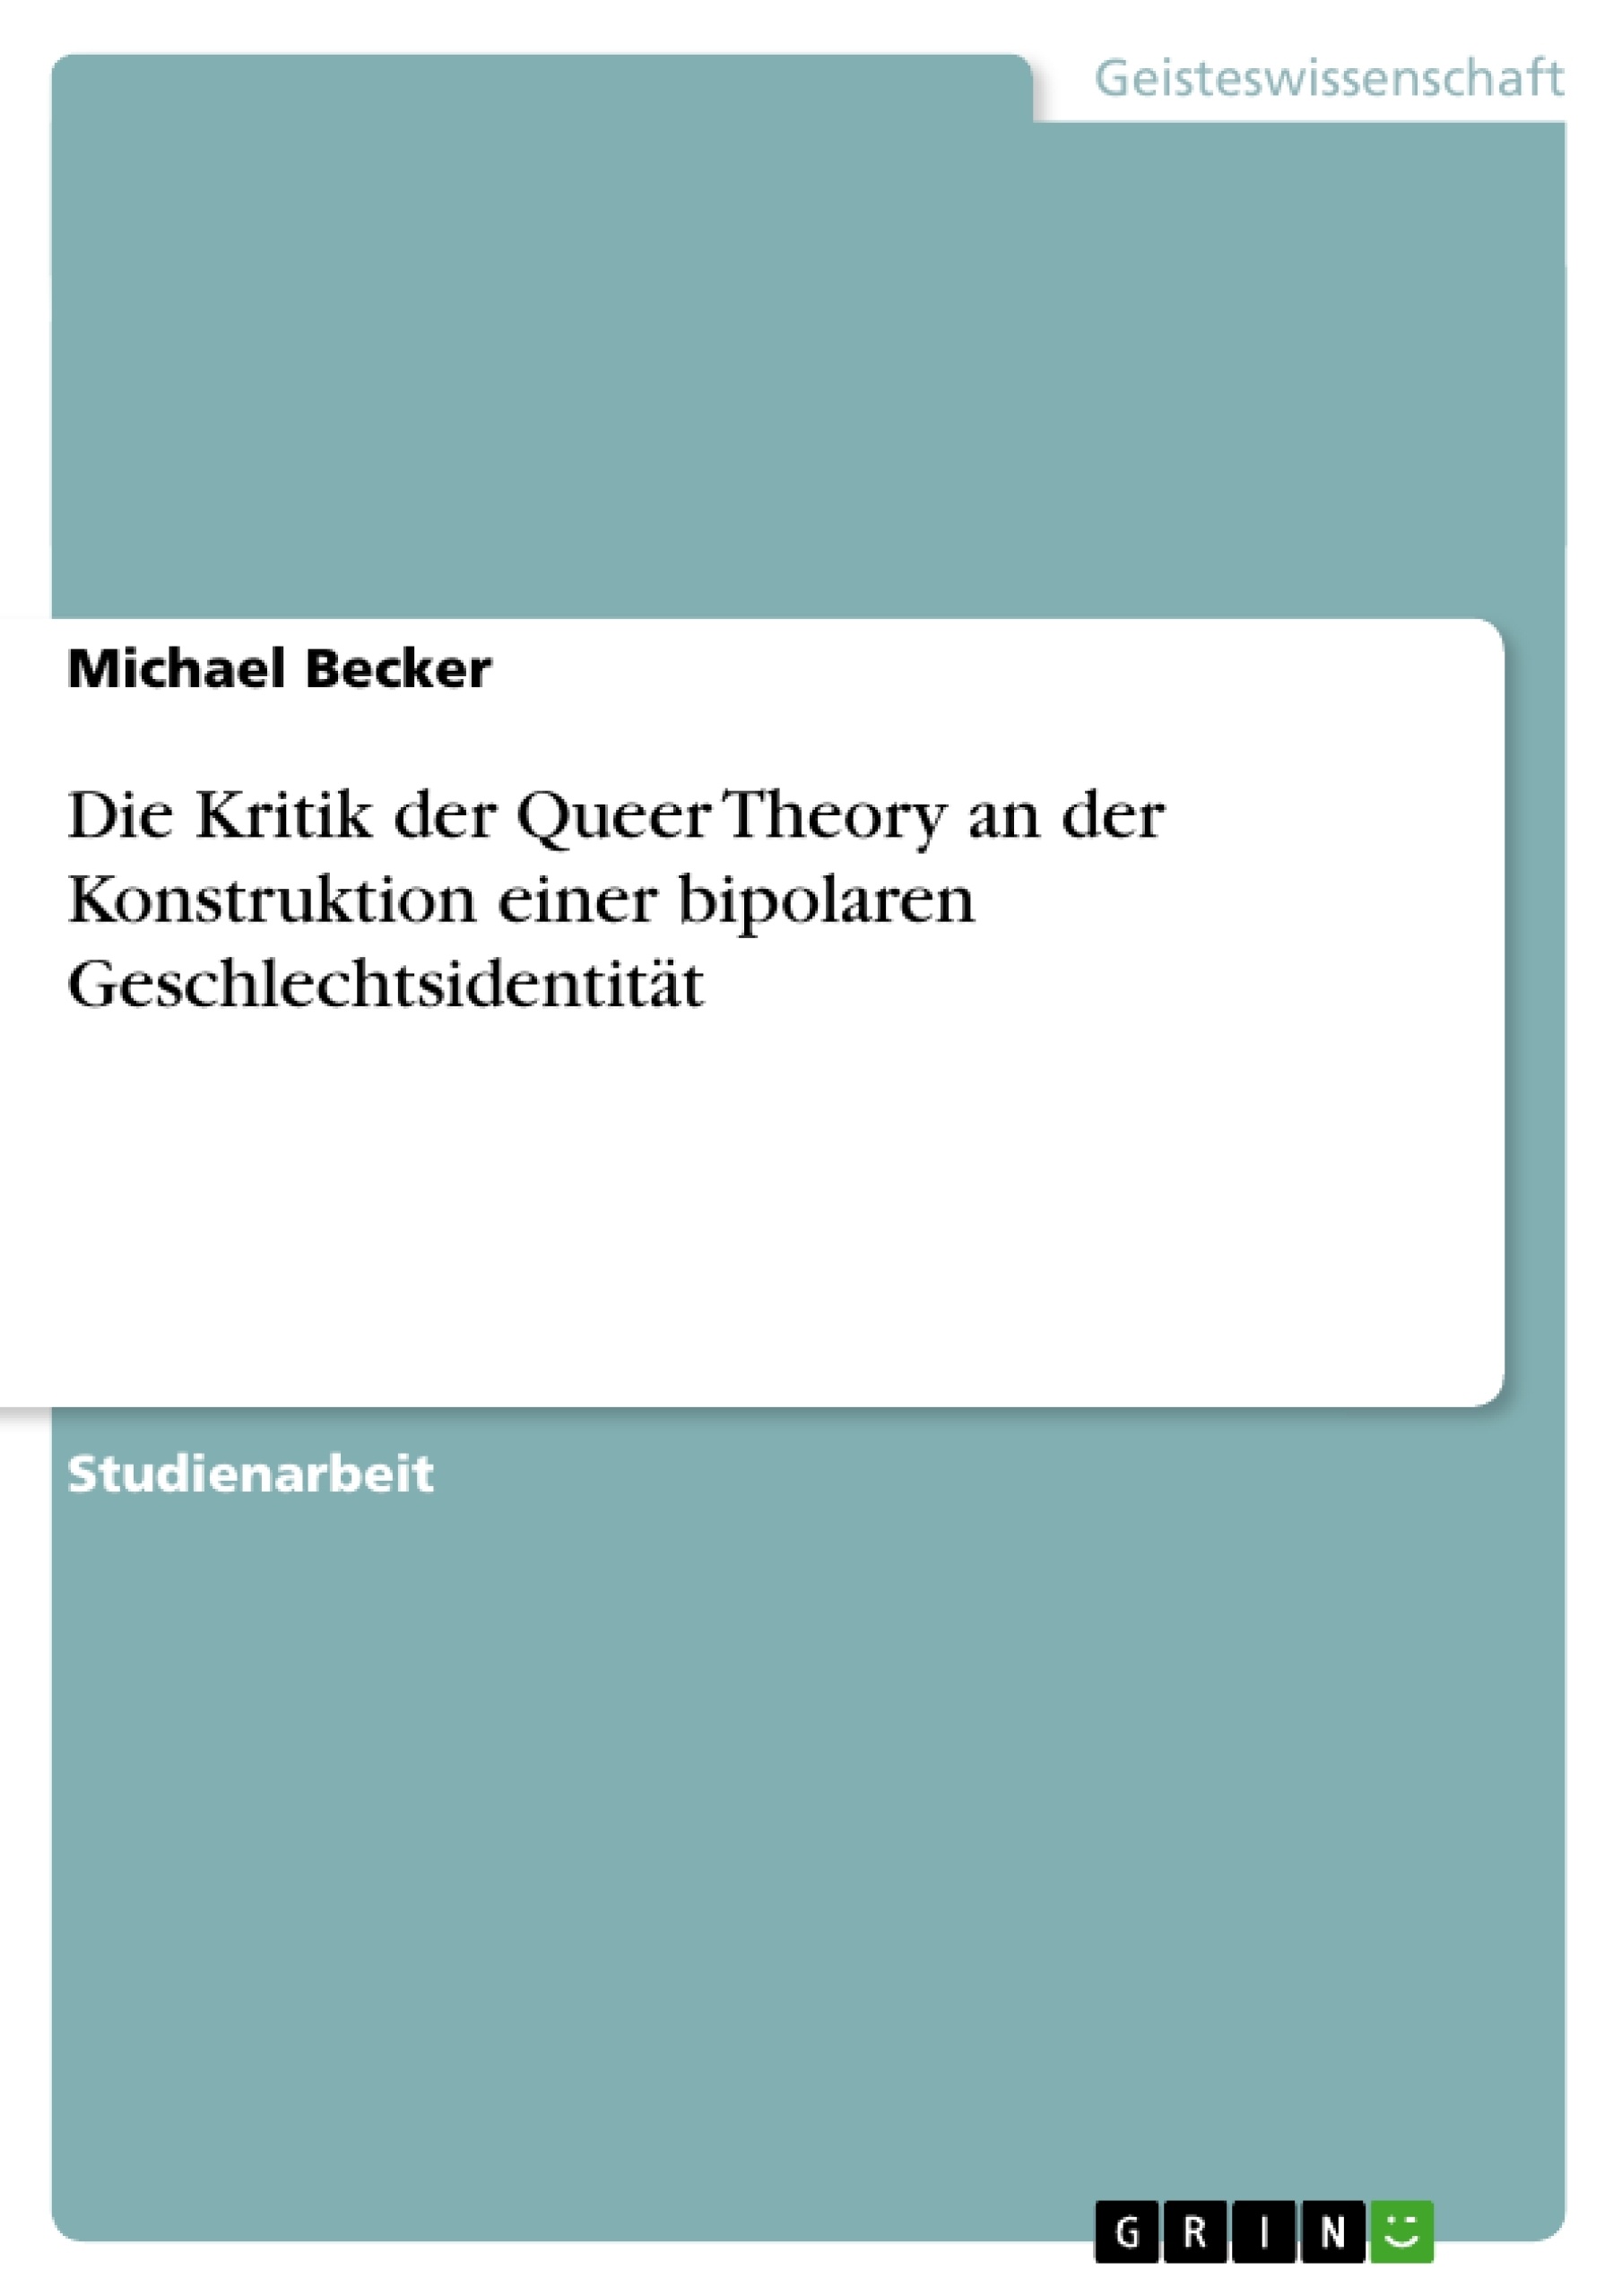 Título: Die Kritik der Queer Theory an der Konstruktion einer bipolaren Geschlechtsidentität